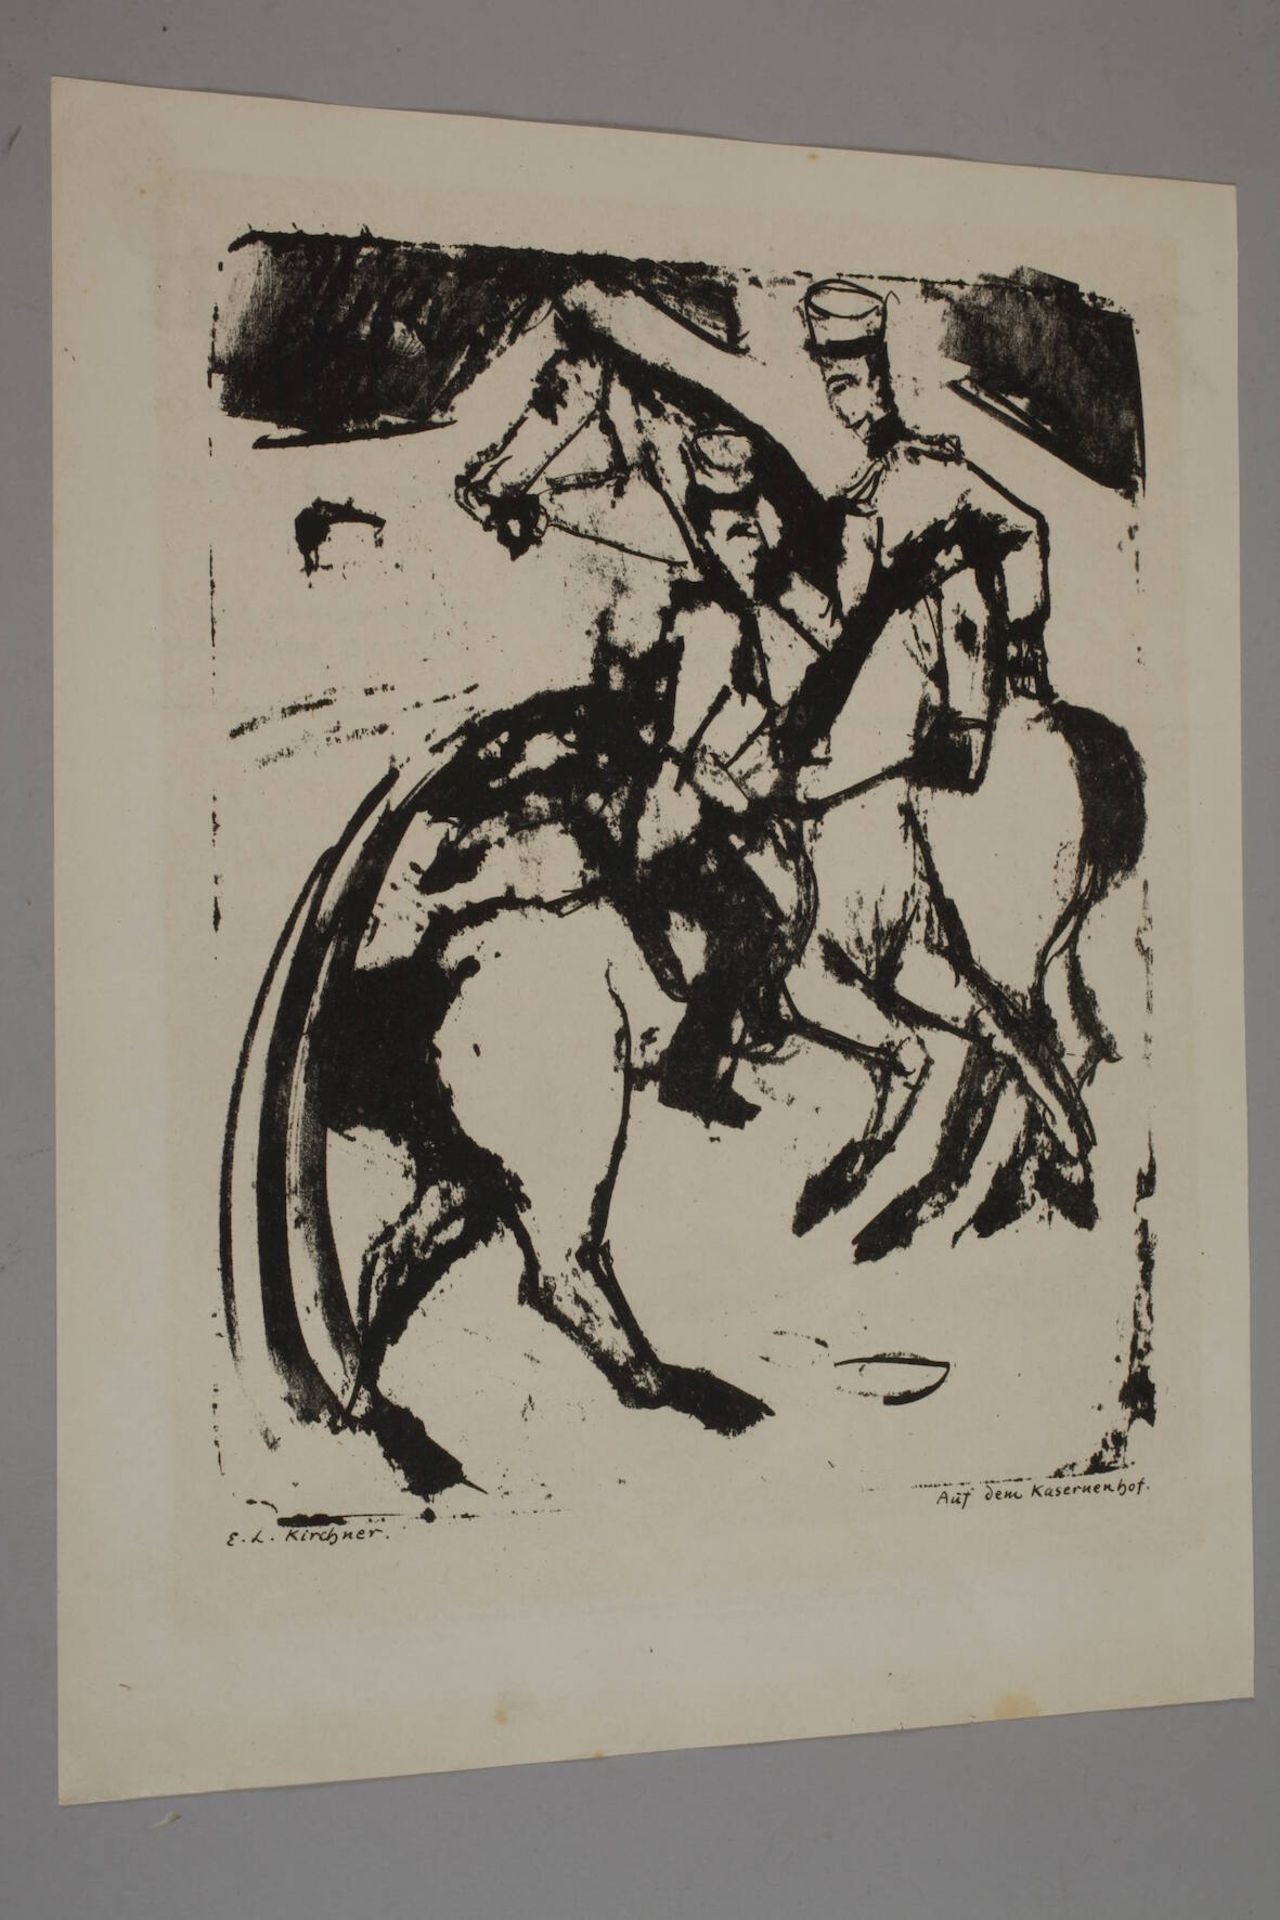 Ernst Ludwig Kirchner, "Auf dem Kasernenhof" - Image 2 of 6